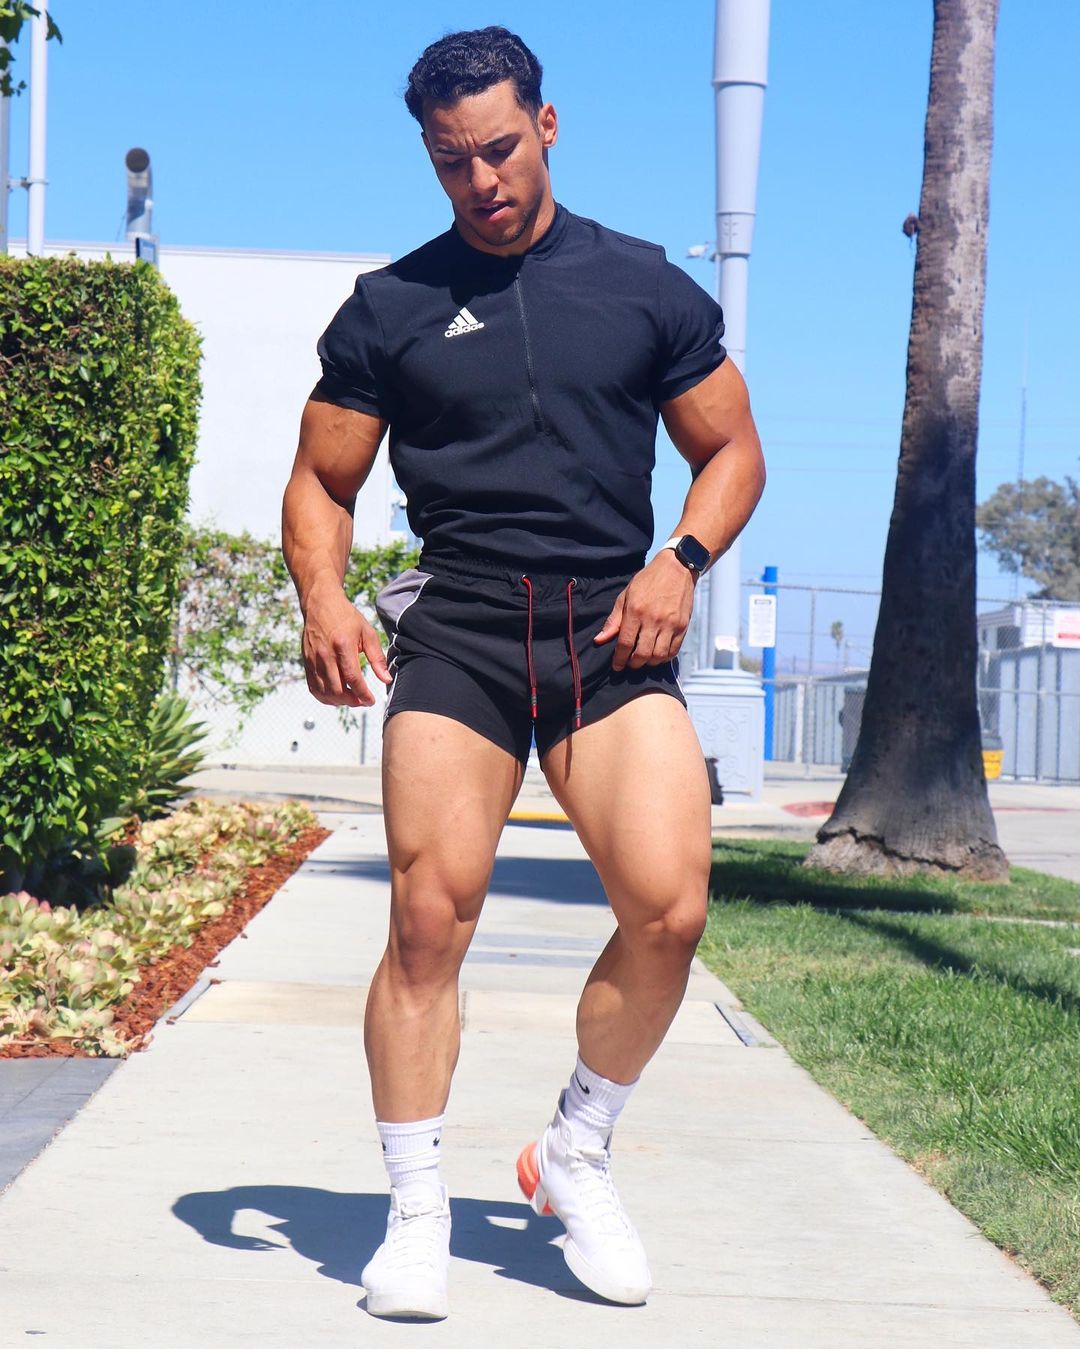 the beauty of male muscle: Josh J.